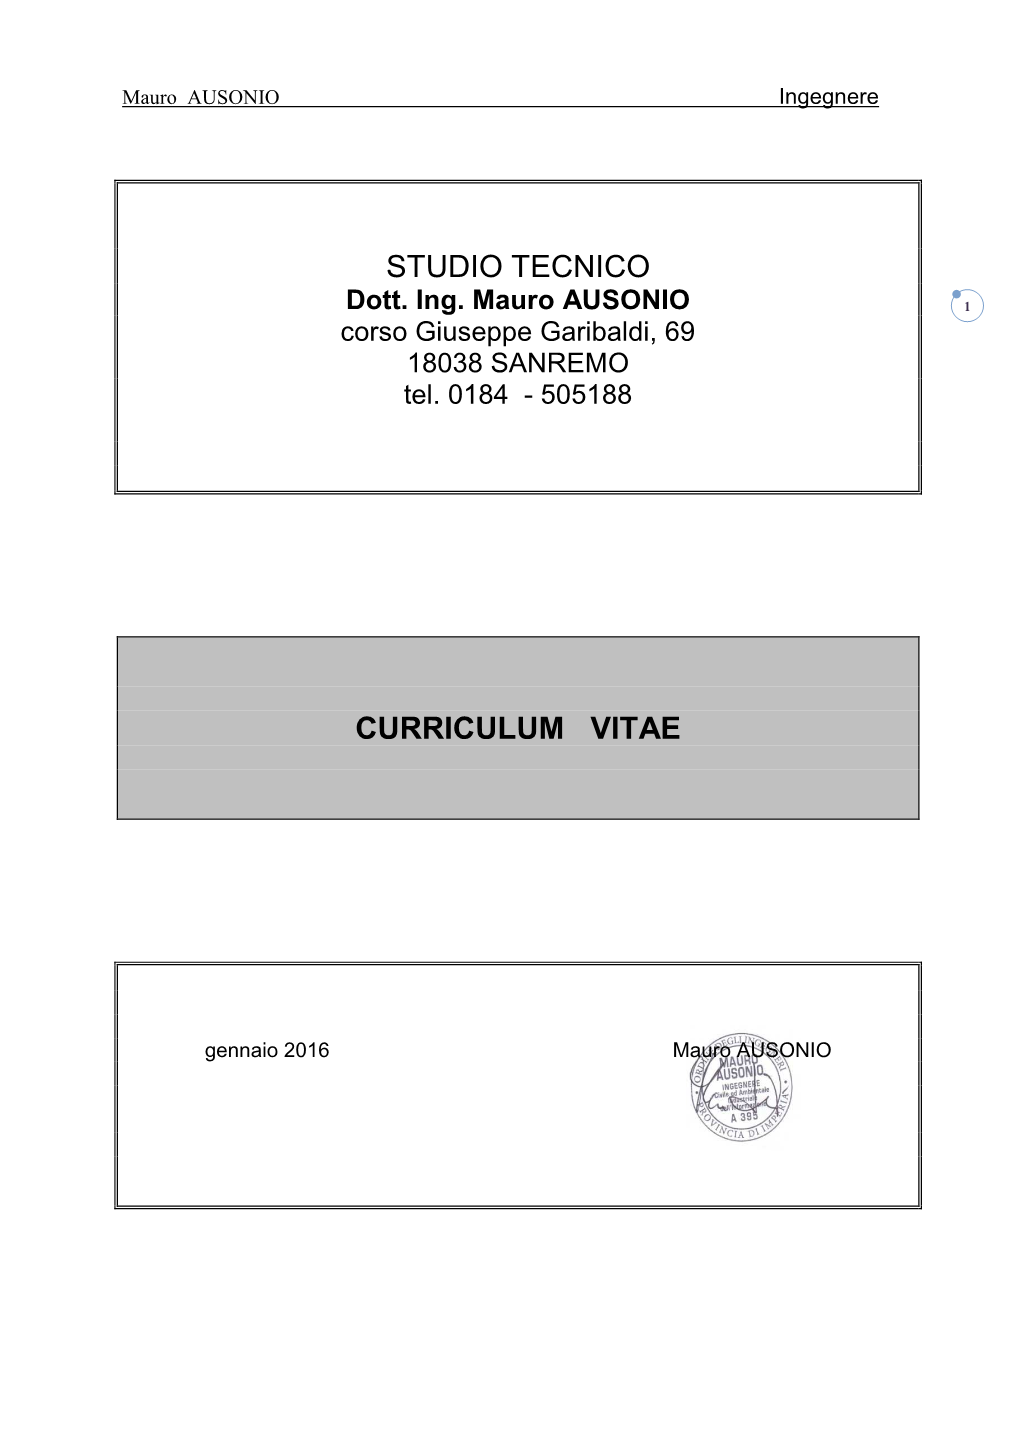 Studio Tecnico Curriculum Vitae